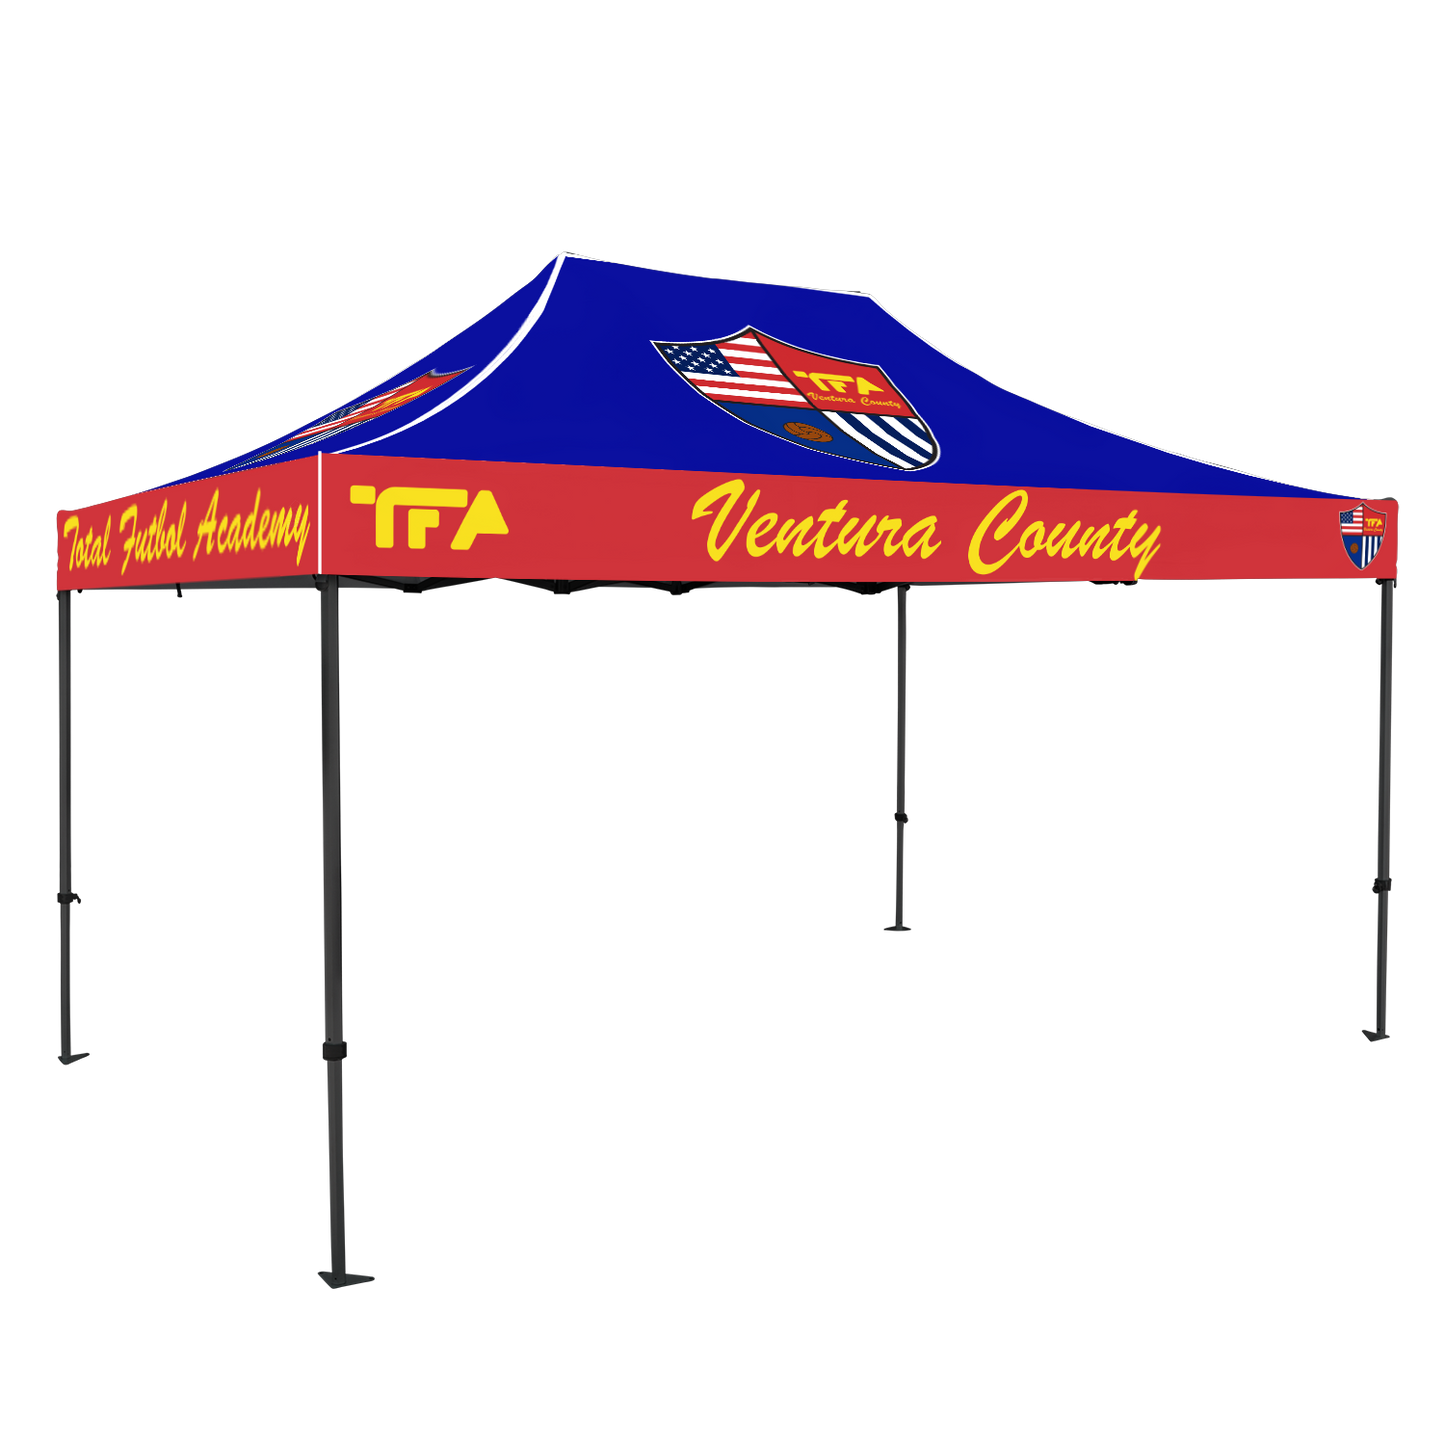 TFA Ventura County 10x15 Canopy Kit